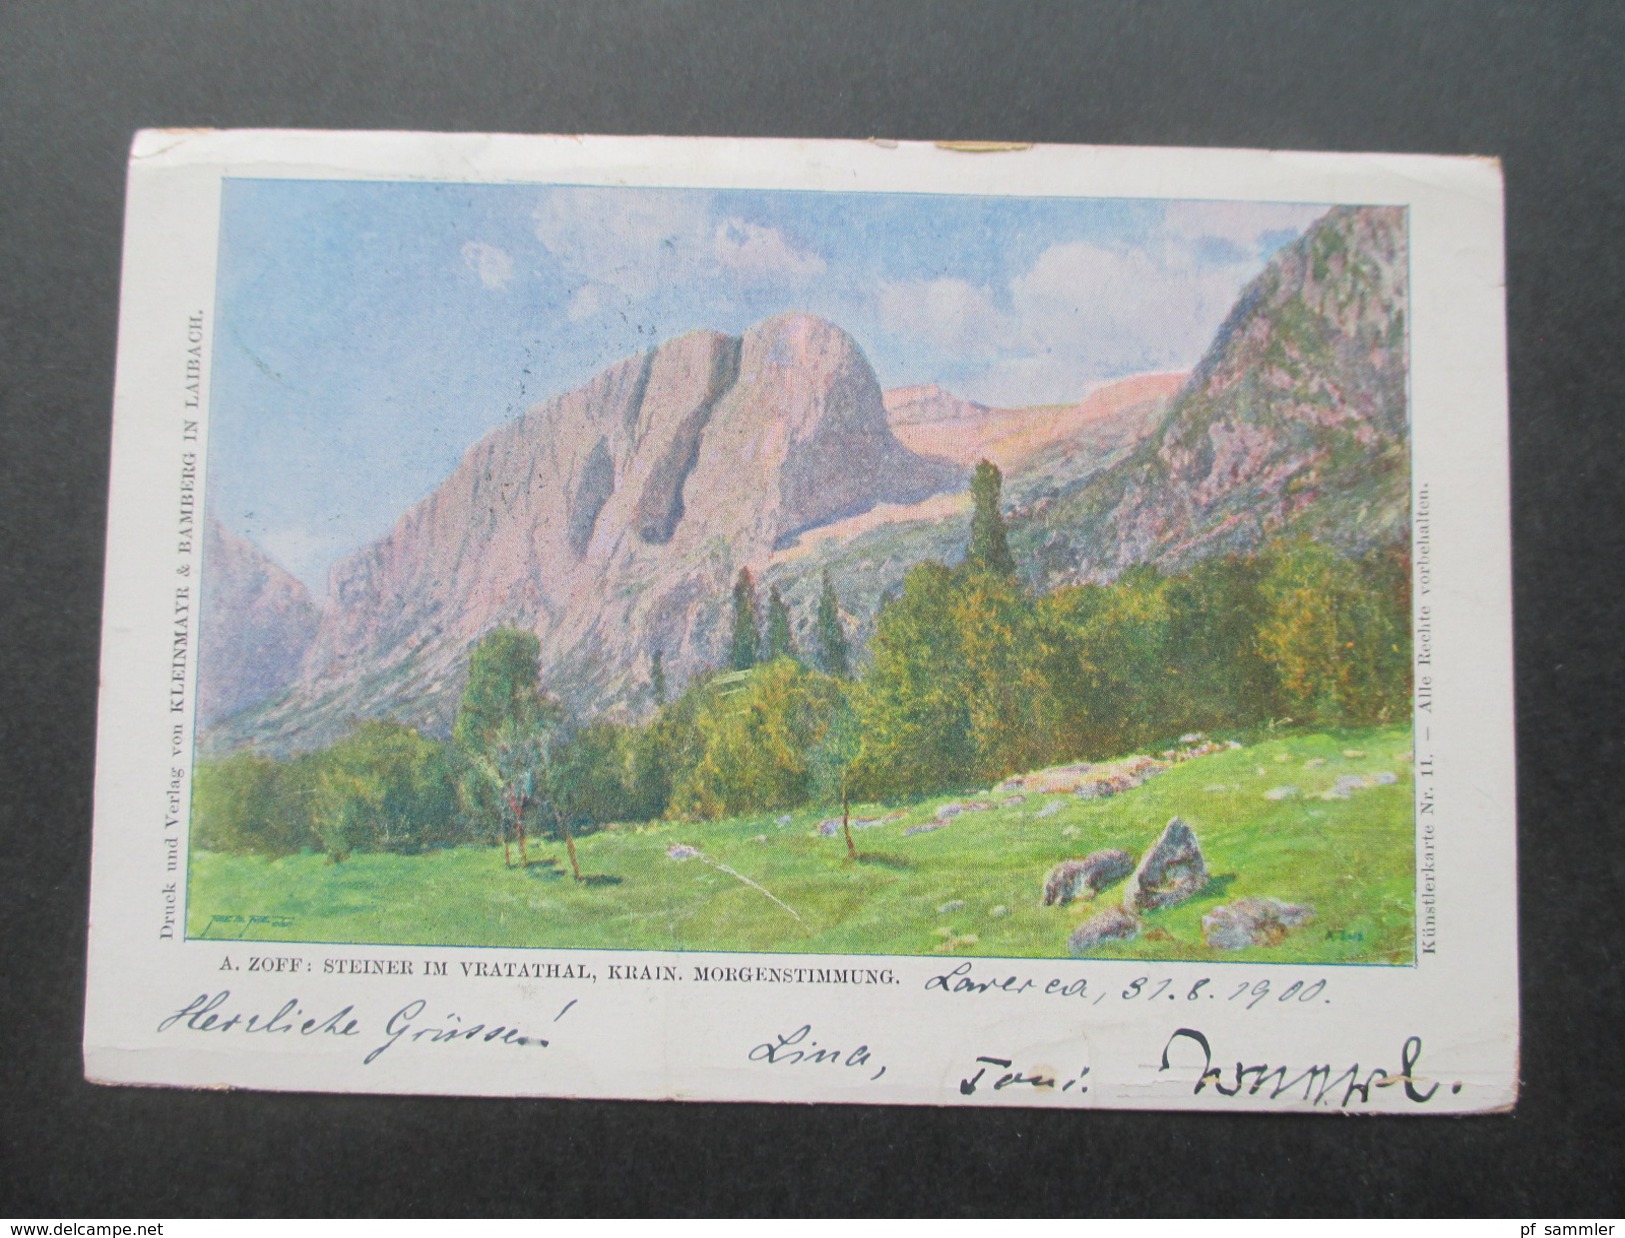 Österreich 1900 Feldpostkarte Künstlerkarte A. Zoff. Vratathal. Krain. Bahnpoststempel. Kleinmayer In Laibach - 1900-1949